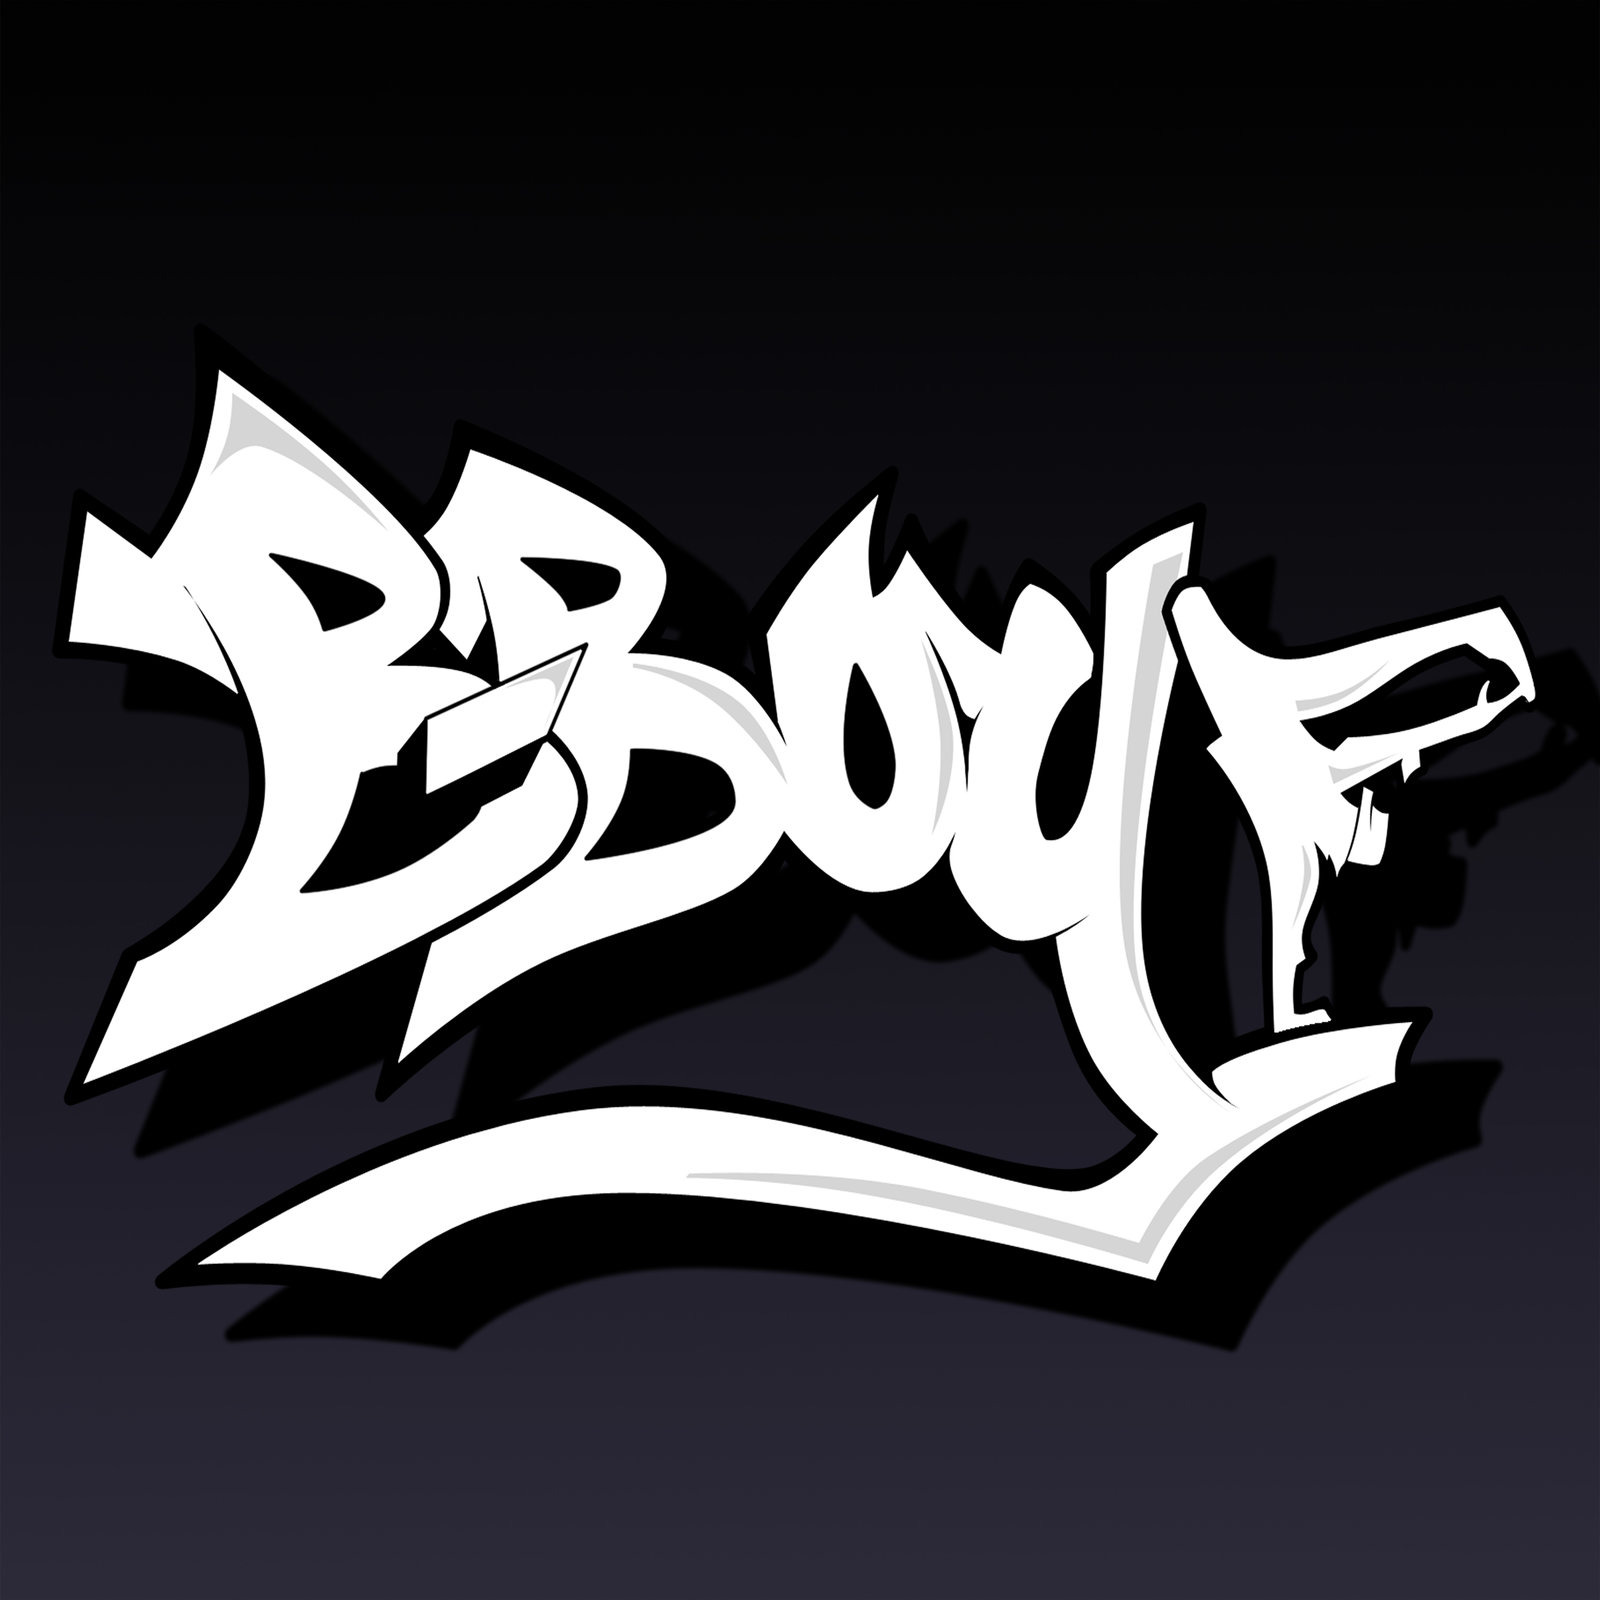 Bboy Logo Wallpaper